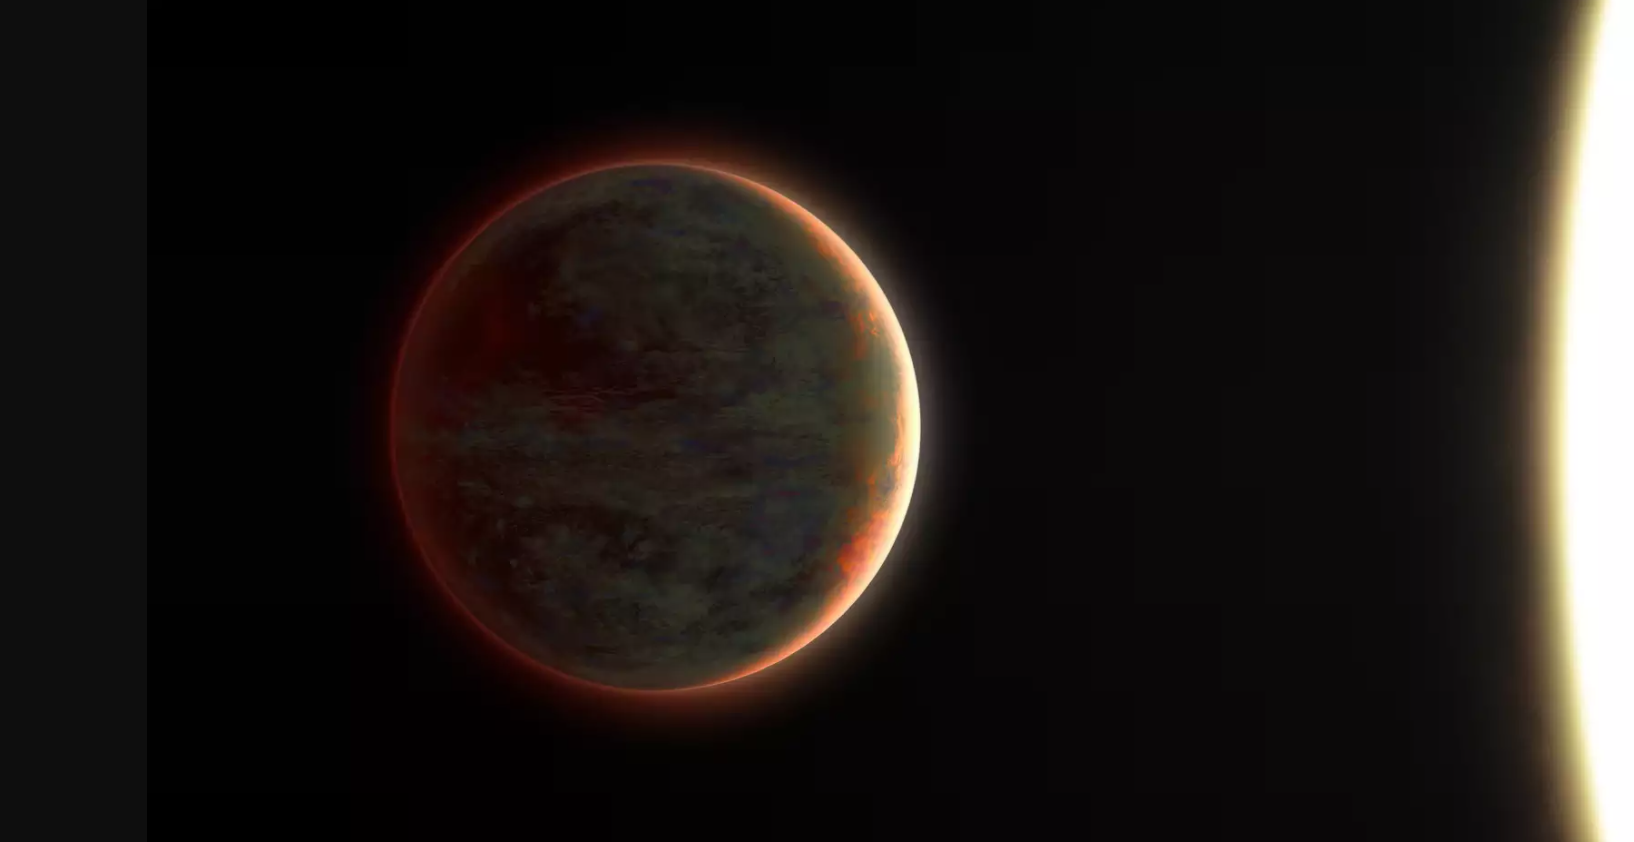 a hot Jupiter exoplanet